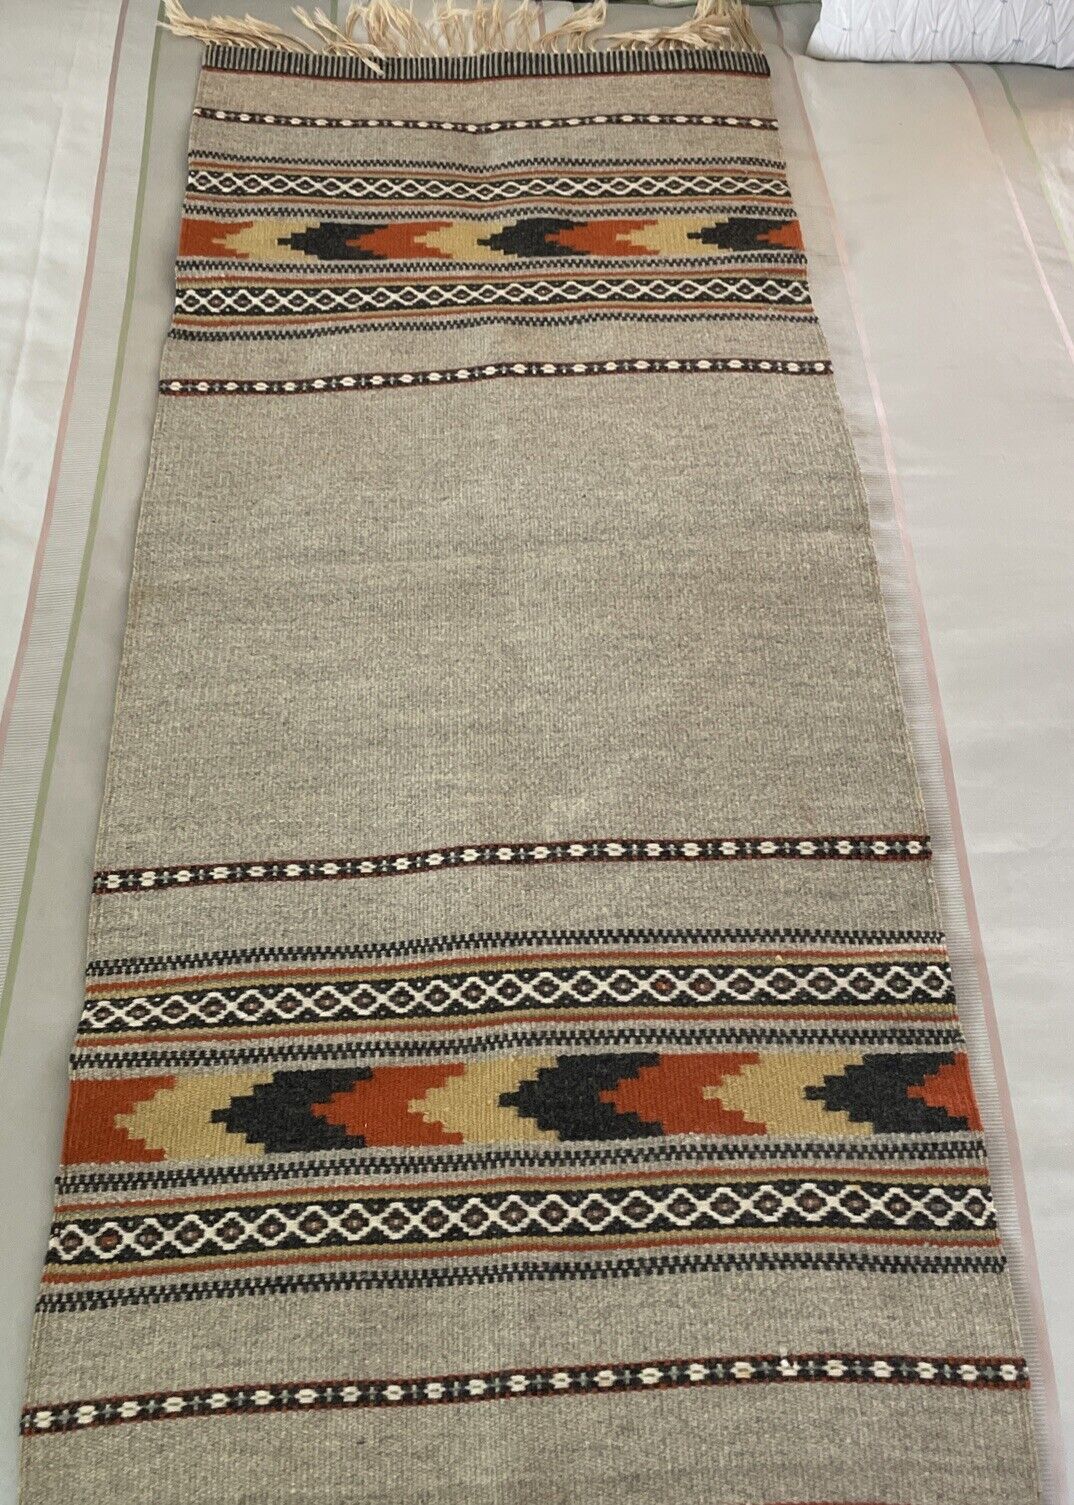 Wool Tapestry Rug Runner Hand Woven  52” x 22” Southwest Boho EUC